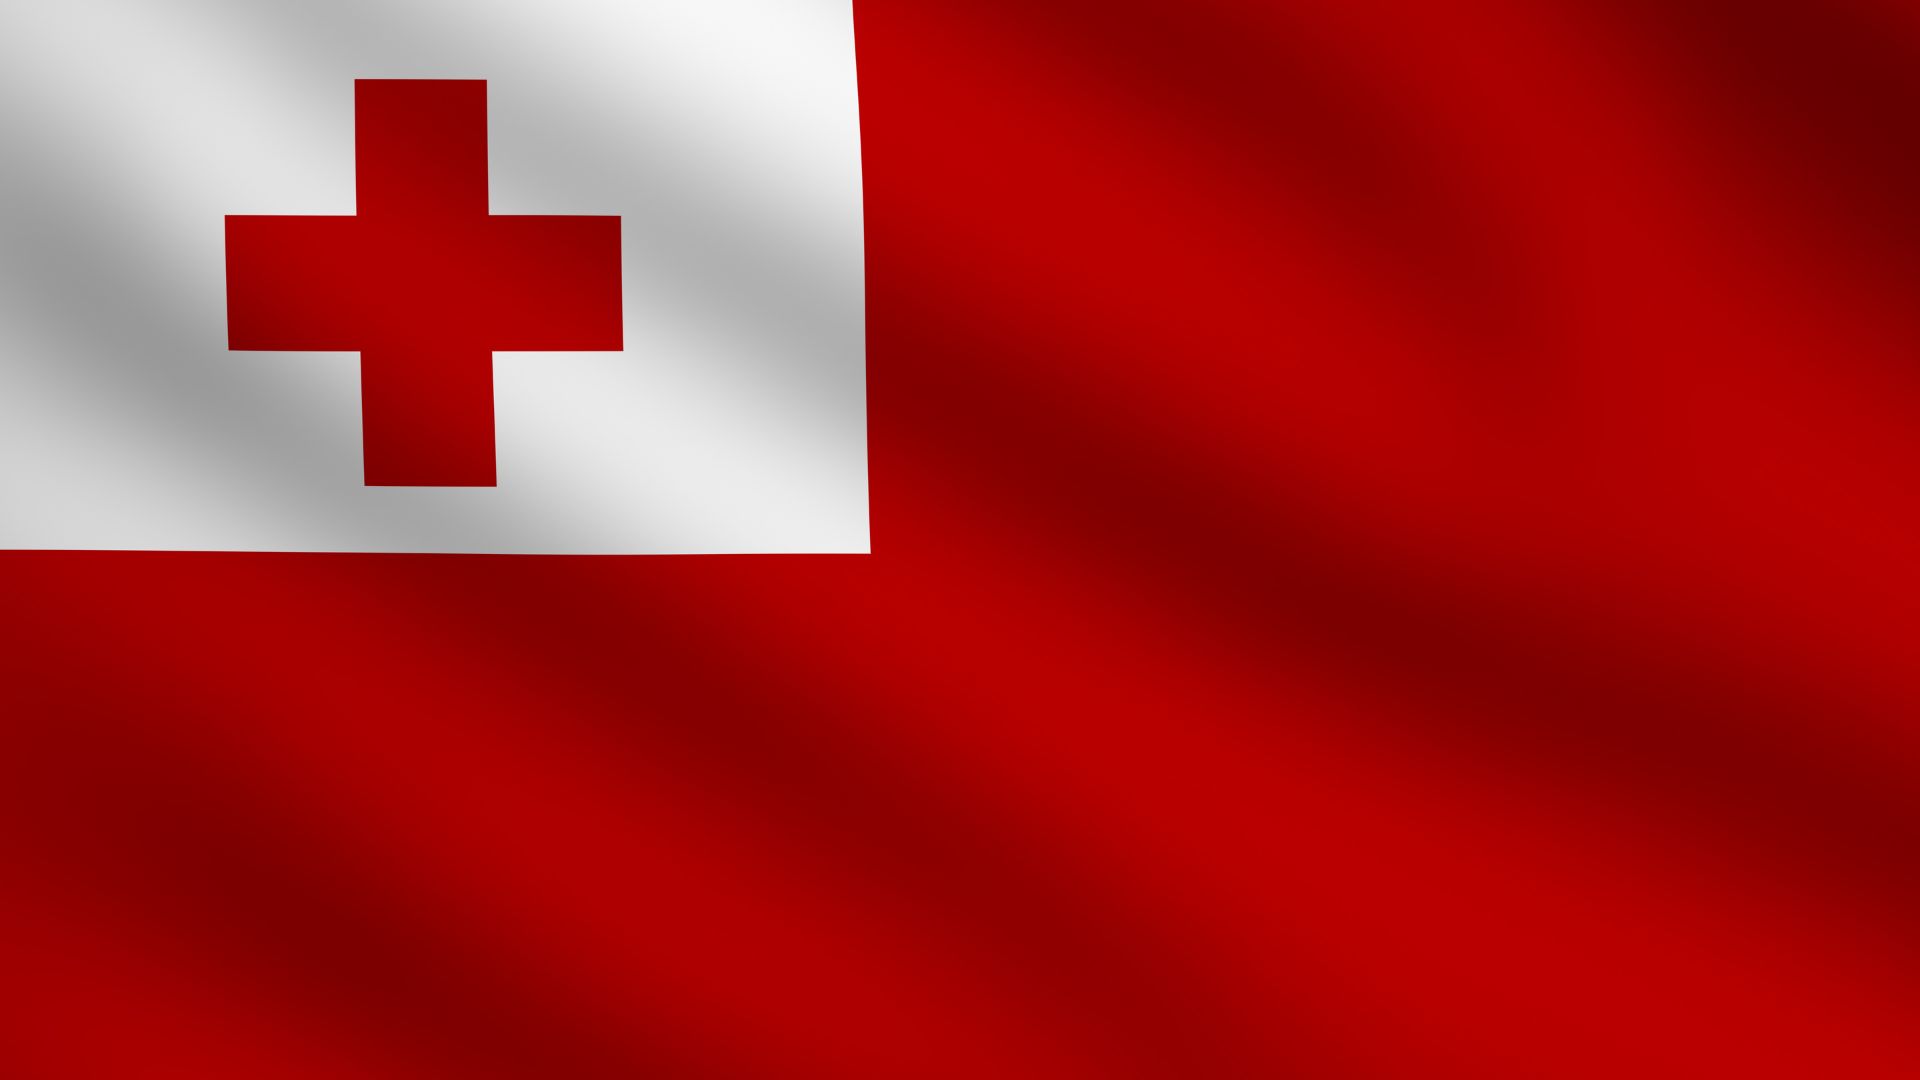 A bandeira de Tonga possui um desenho que consiste em um retângulo com fundo vermelho. Na parte superior esquerda há um retângulo de cor branca e sobre ele, há uma cruz grega vermelha.